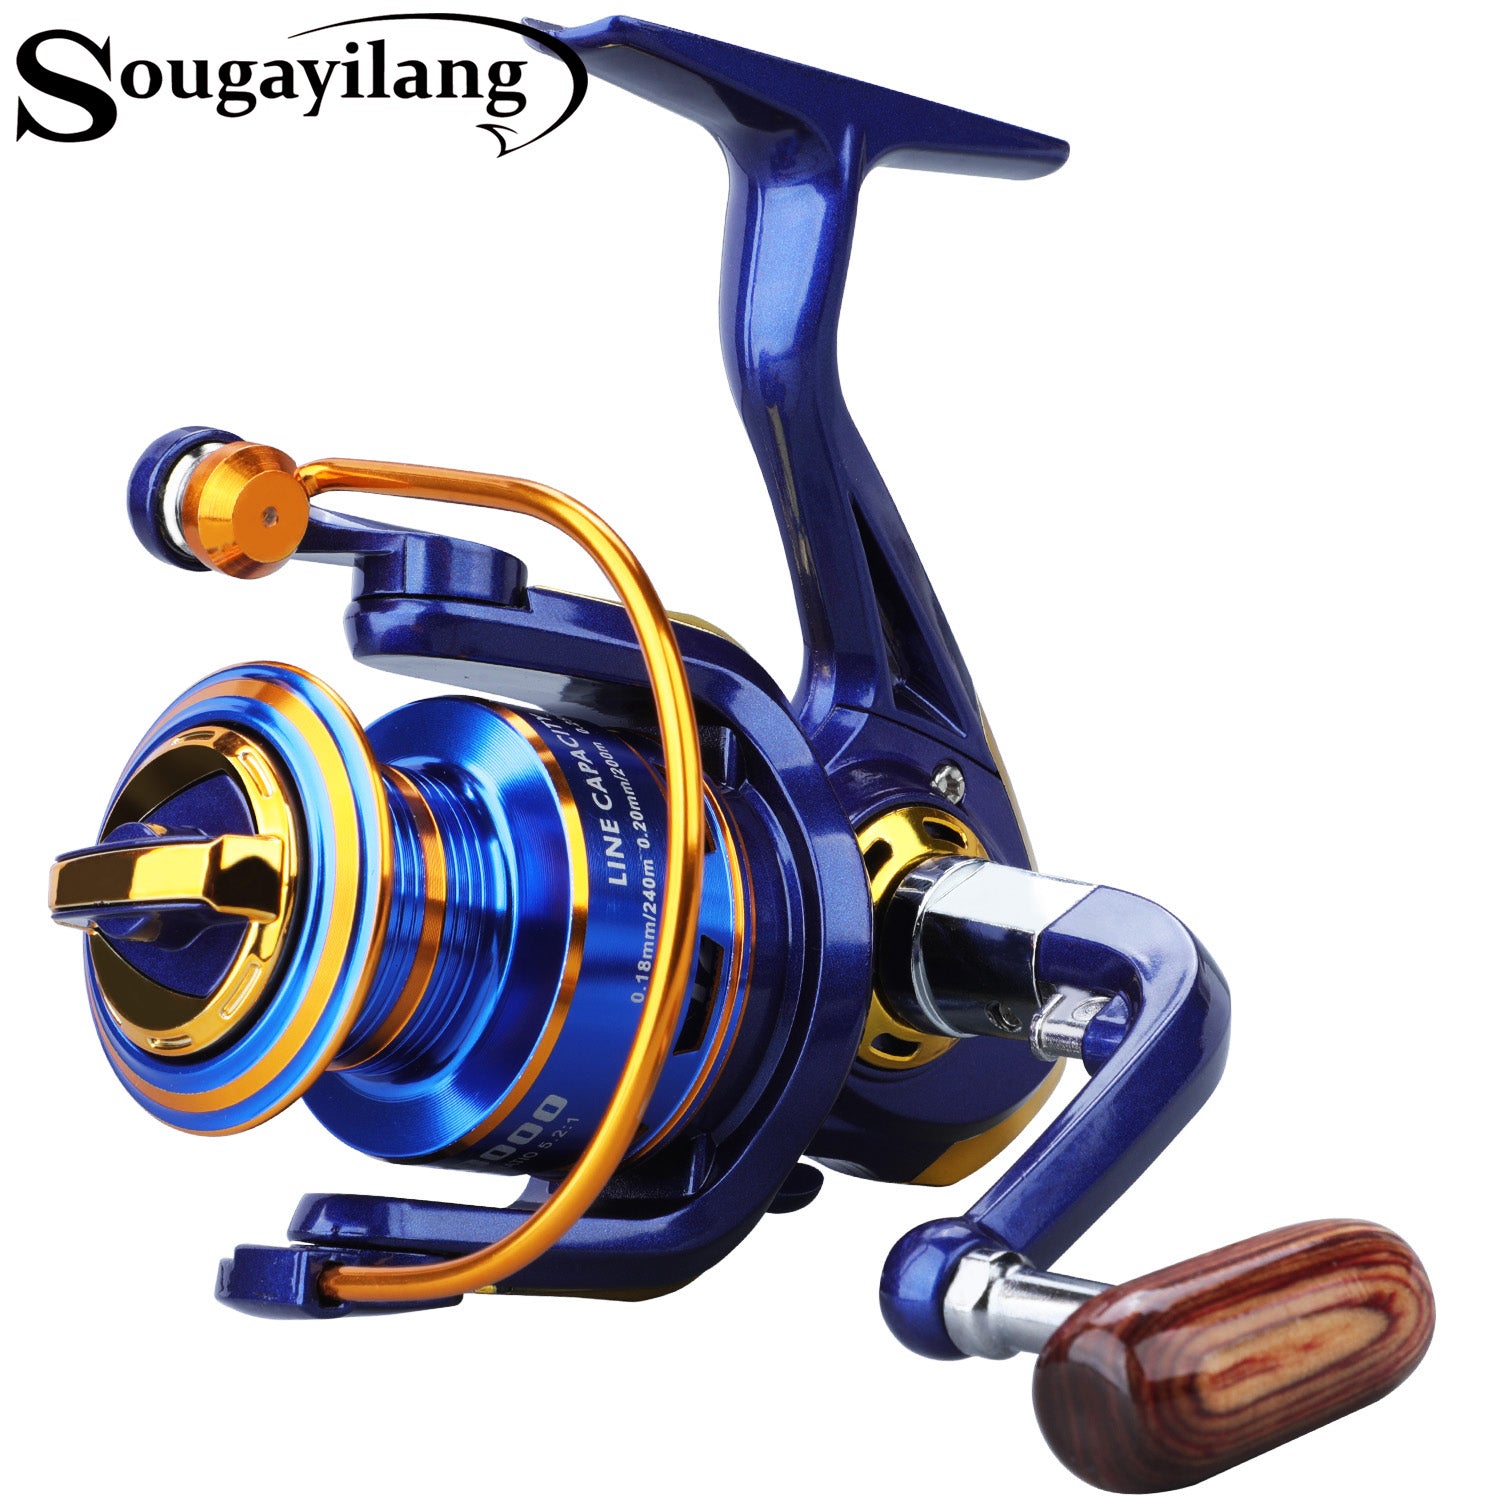 Sougayilang Spinning Fishing Reel Aluminum Alloy Spool 12BB 5.2:1 Light  Weight Fishing Wheel for Bass Carp Fishing Boat Fishing